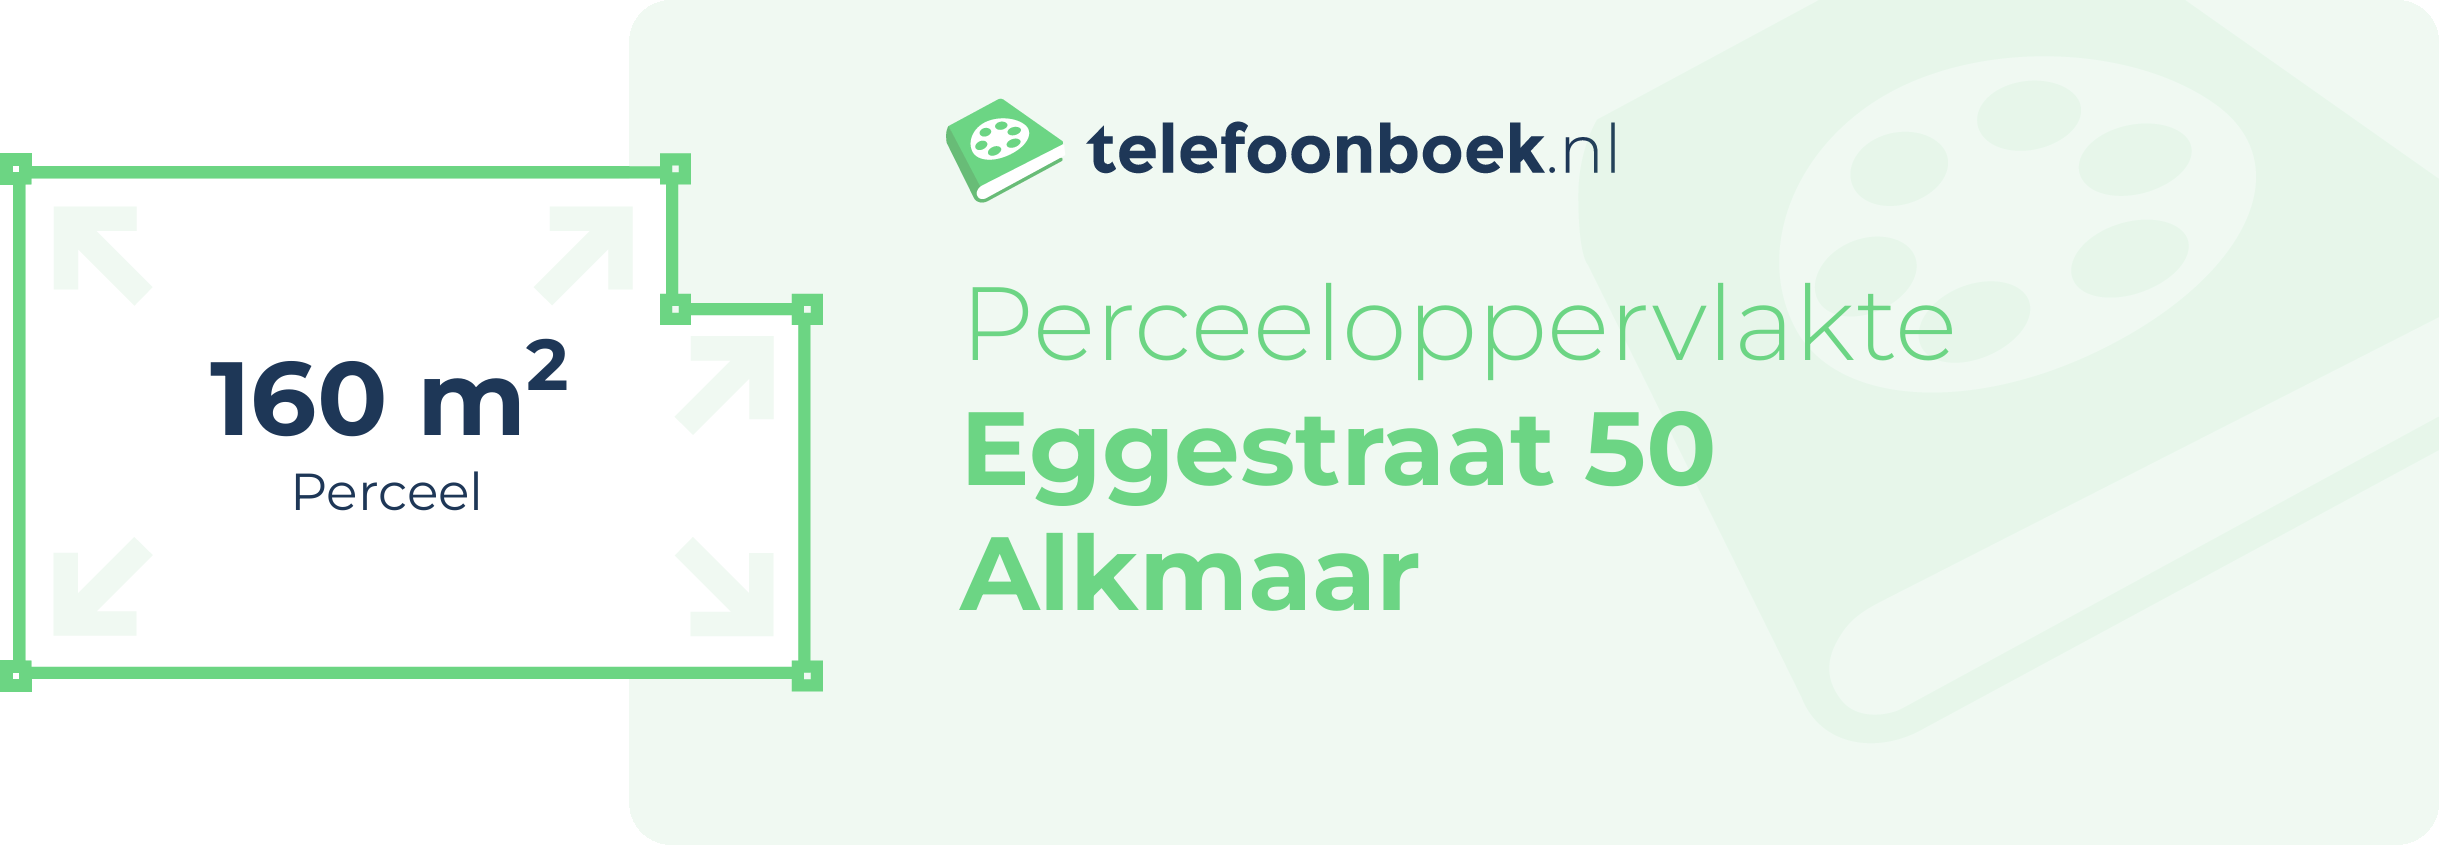 Perceeloppervlakte Eggestraat 50 Alkmaar